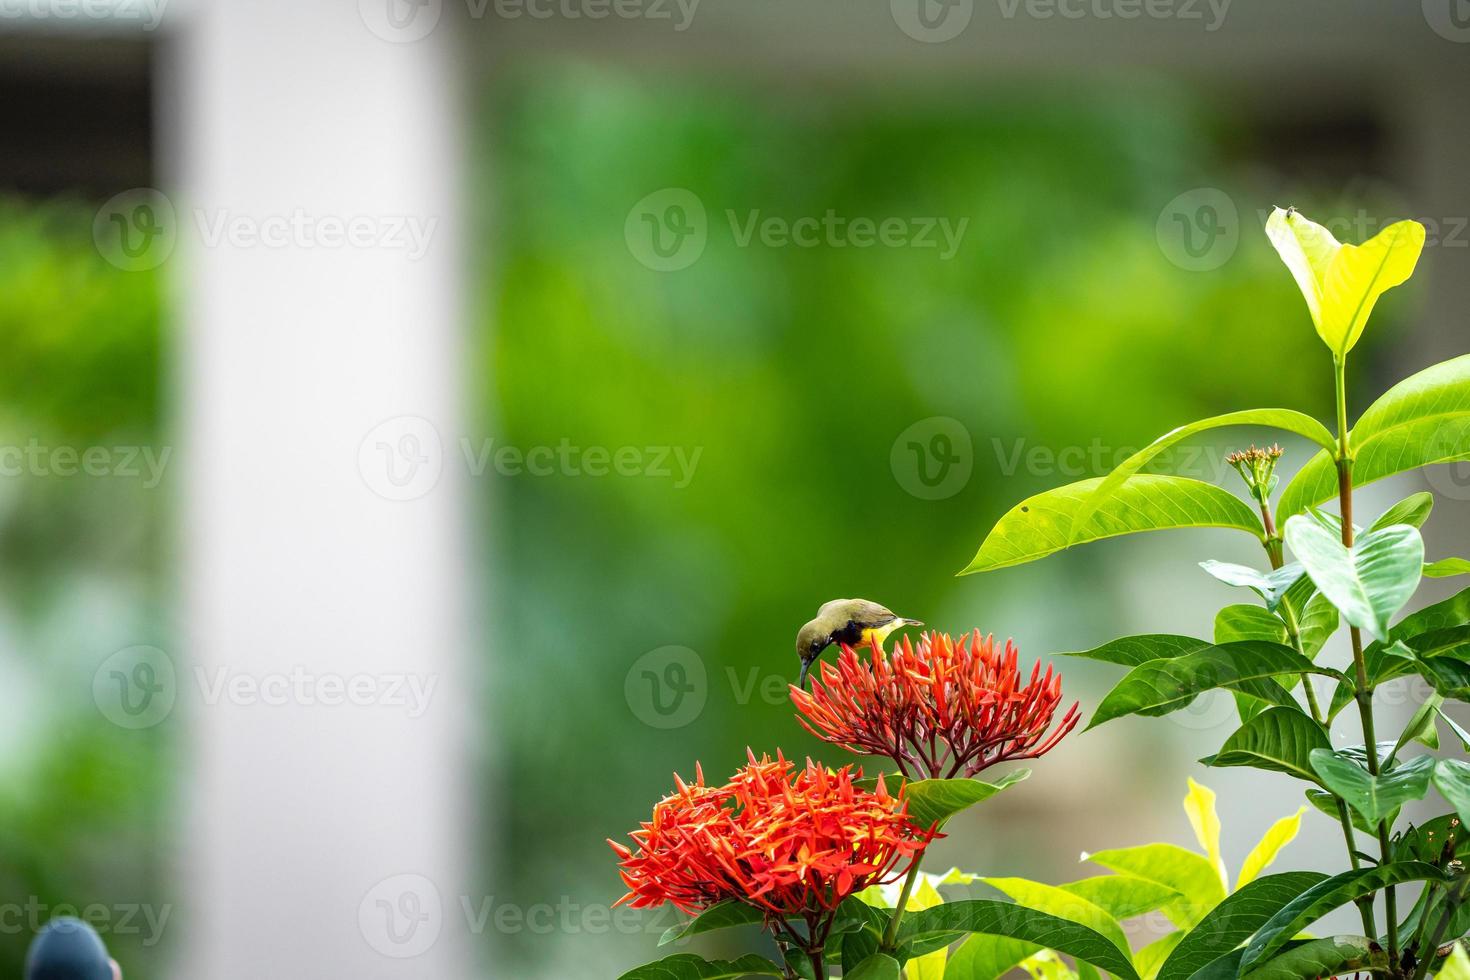 den lilla lilla fågeln står och äter karpeller av röd spikblomma. foto